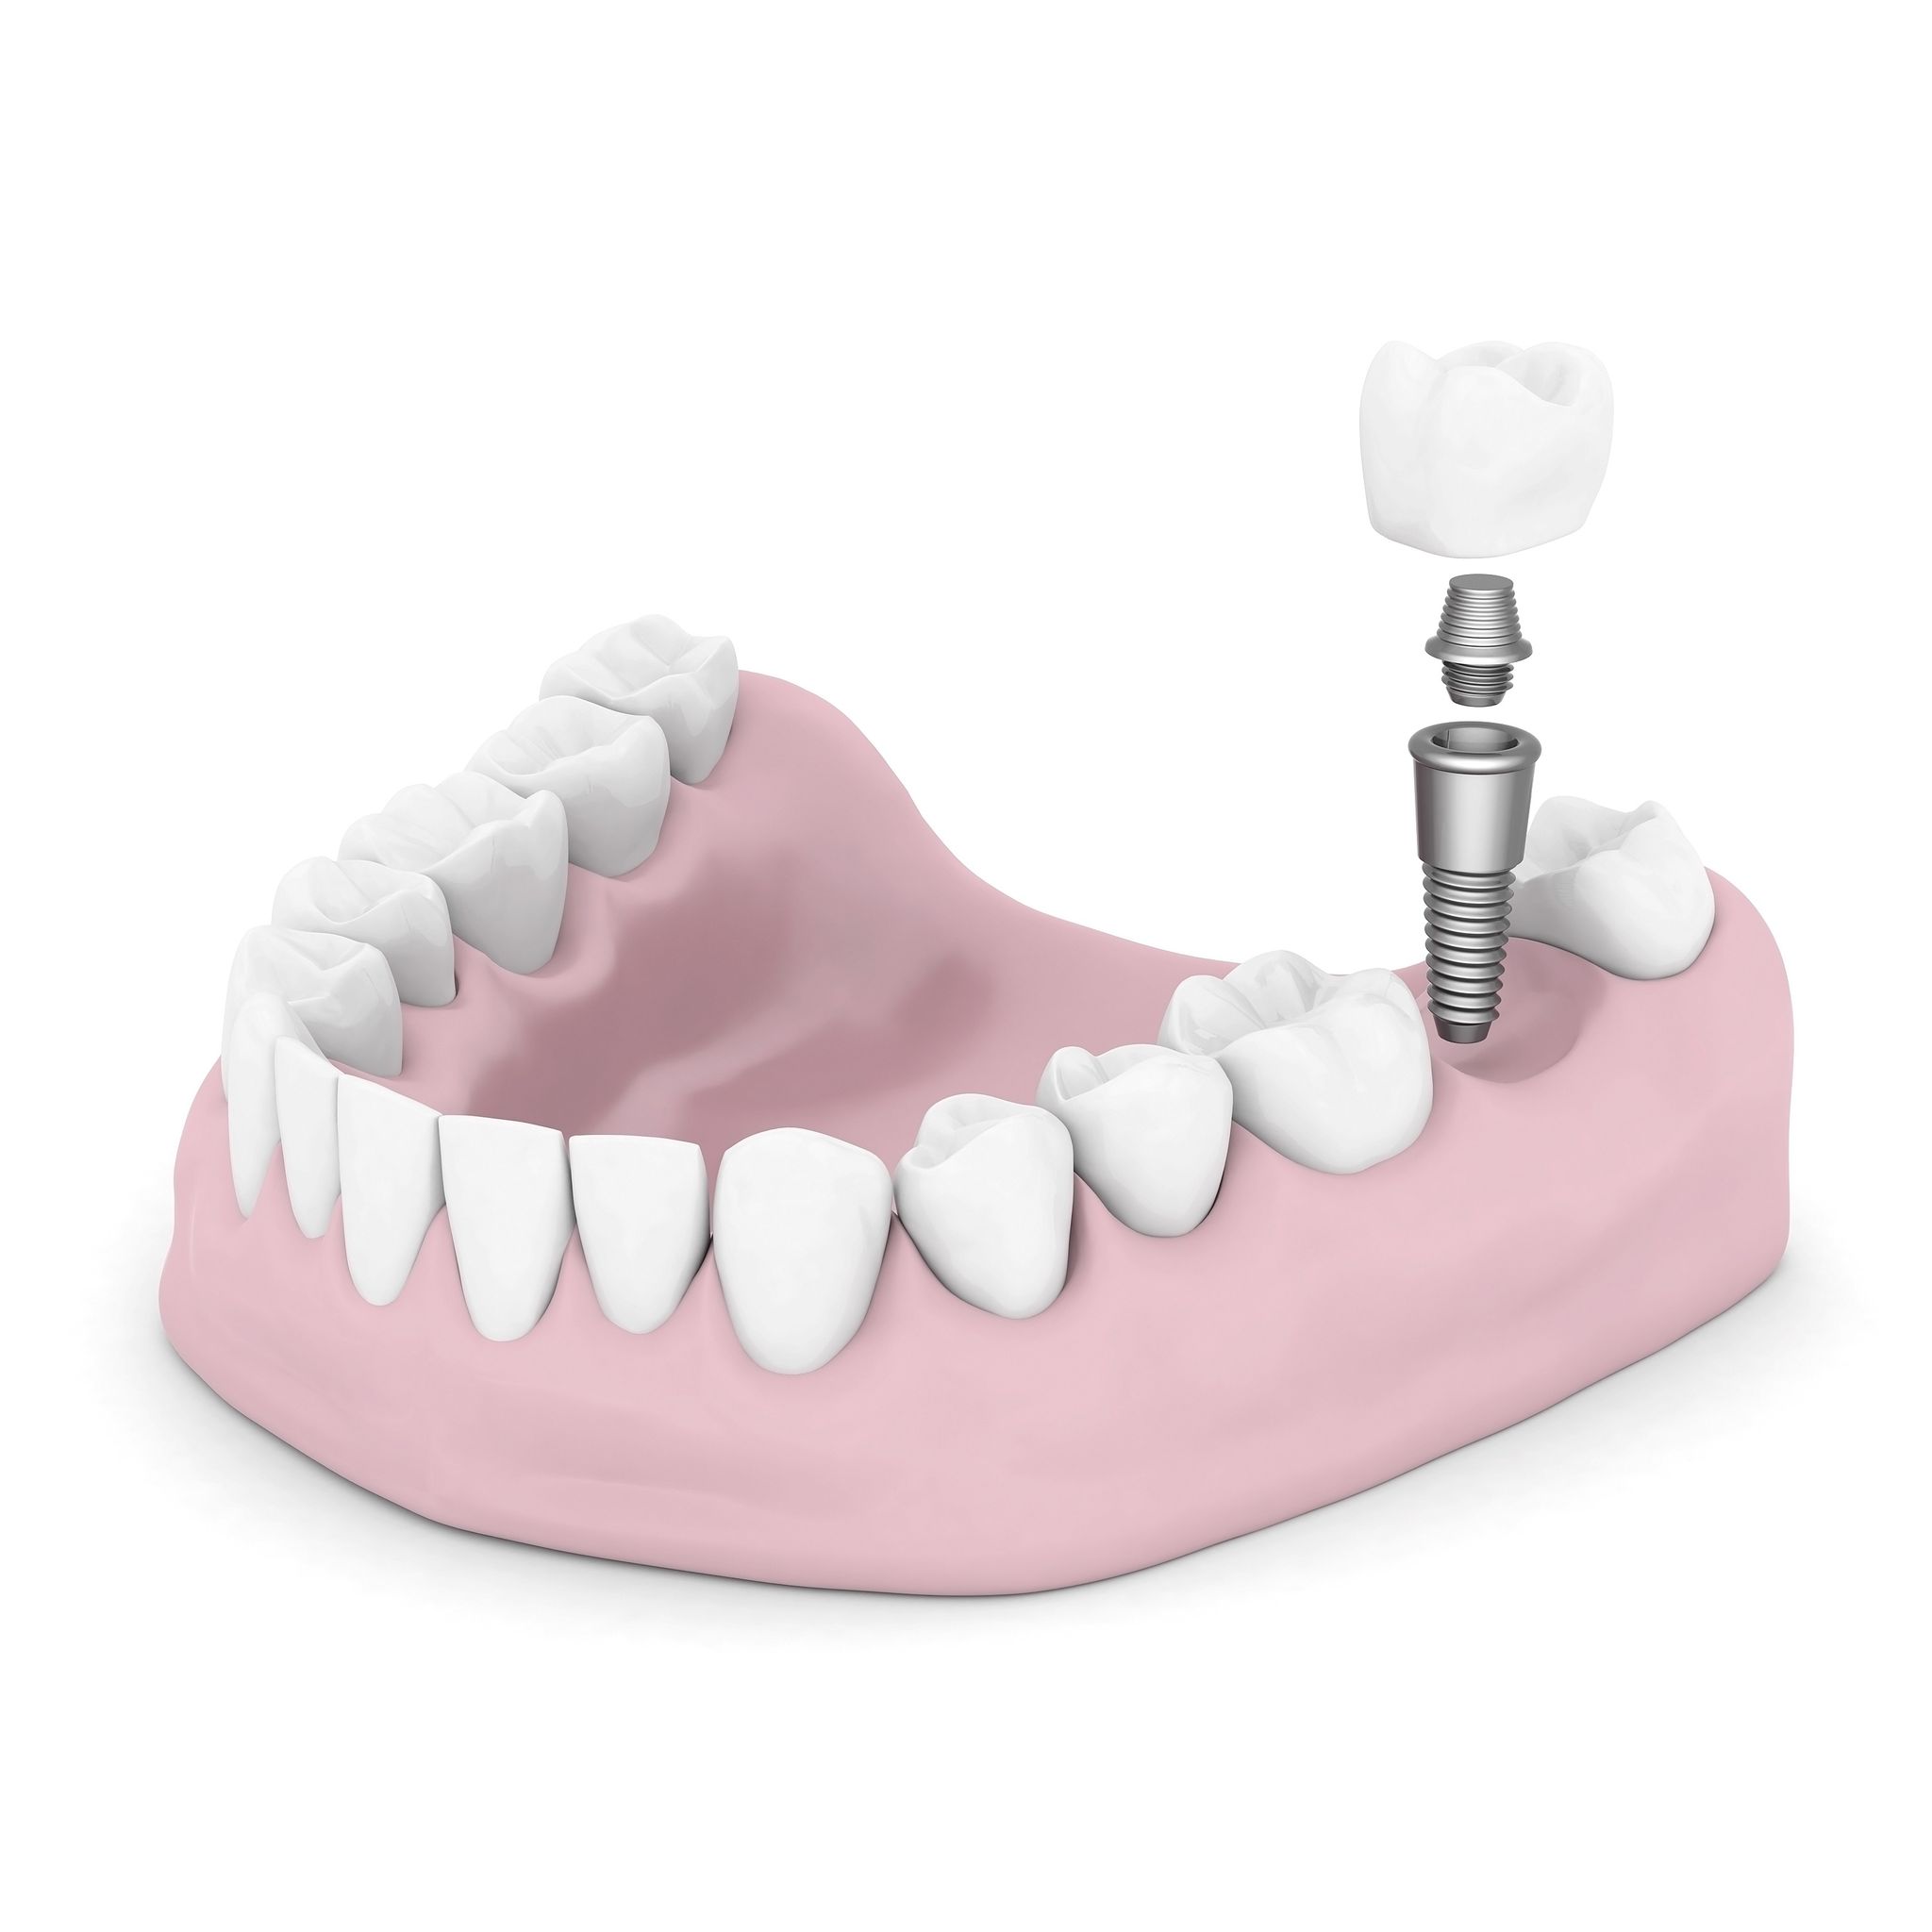 Where can I find dental implants Glen Cove?